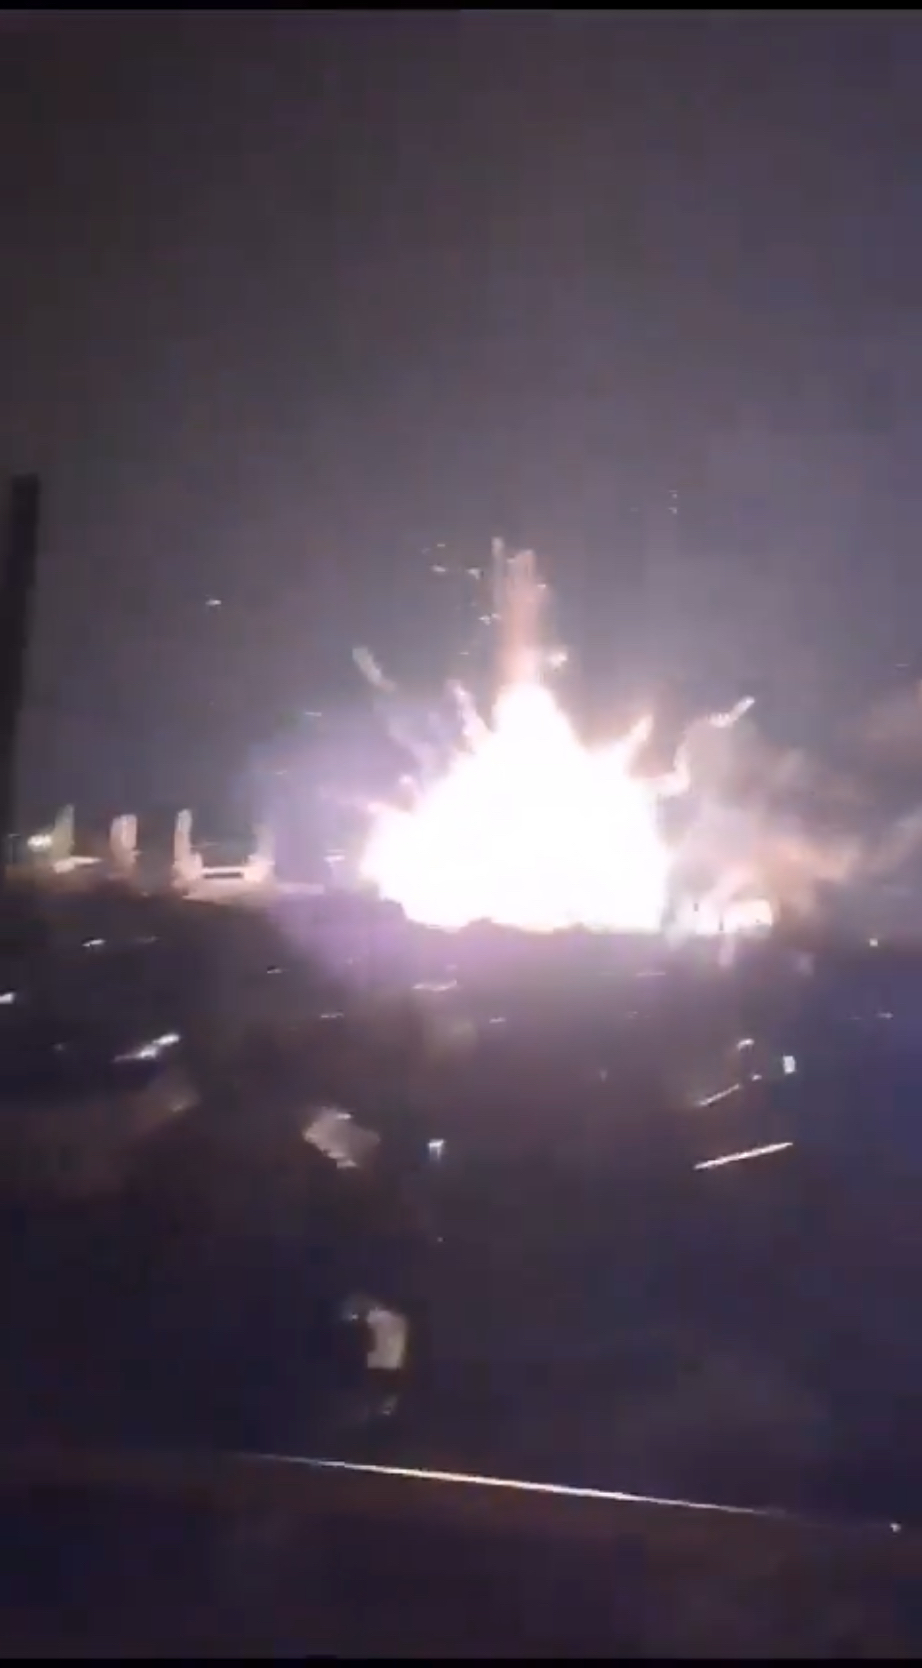 网传影片显示“新切尔卡斯克号” （Novocherkassk）爆炸的一刻。X